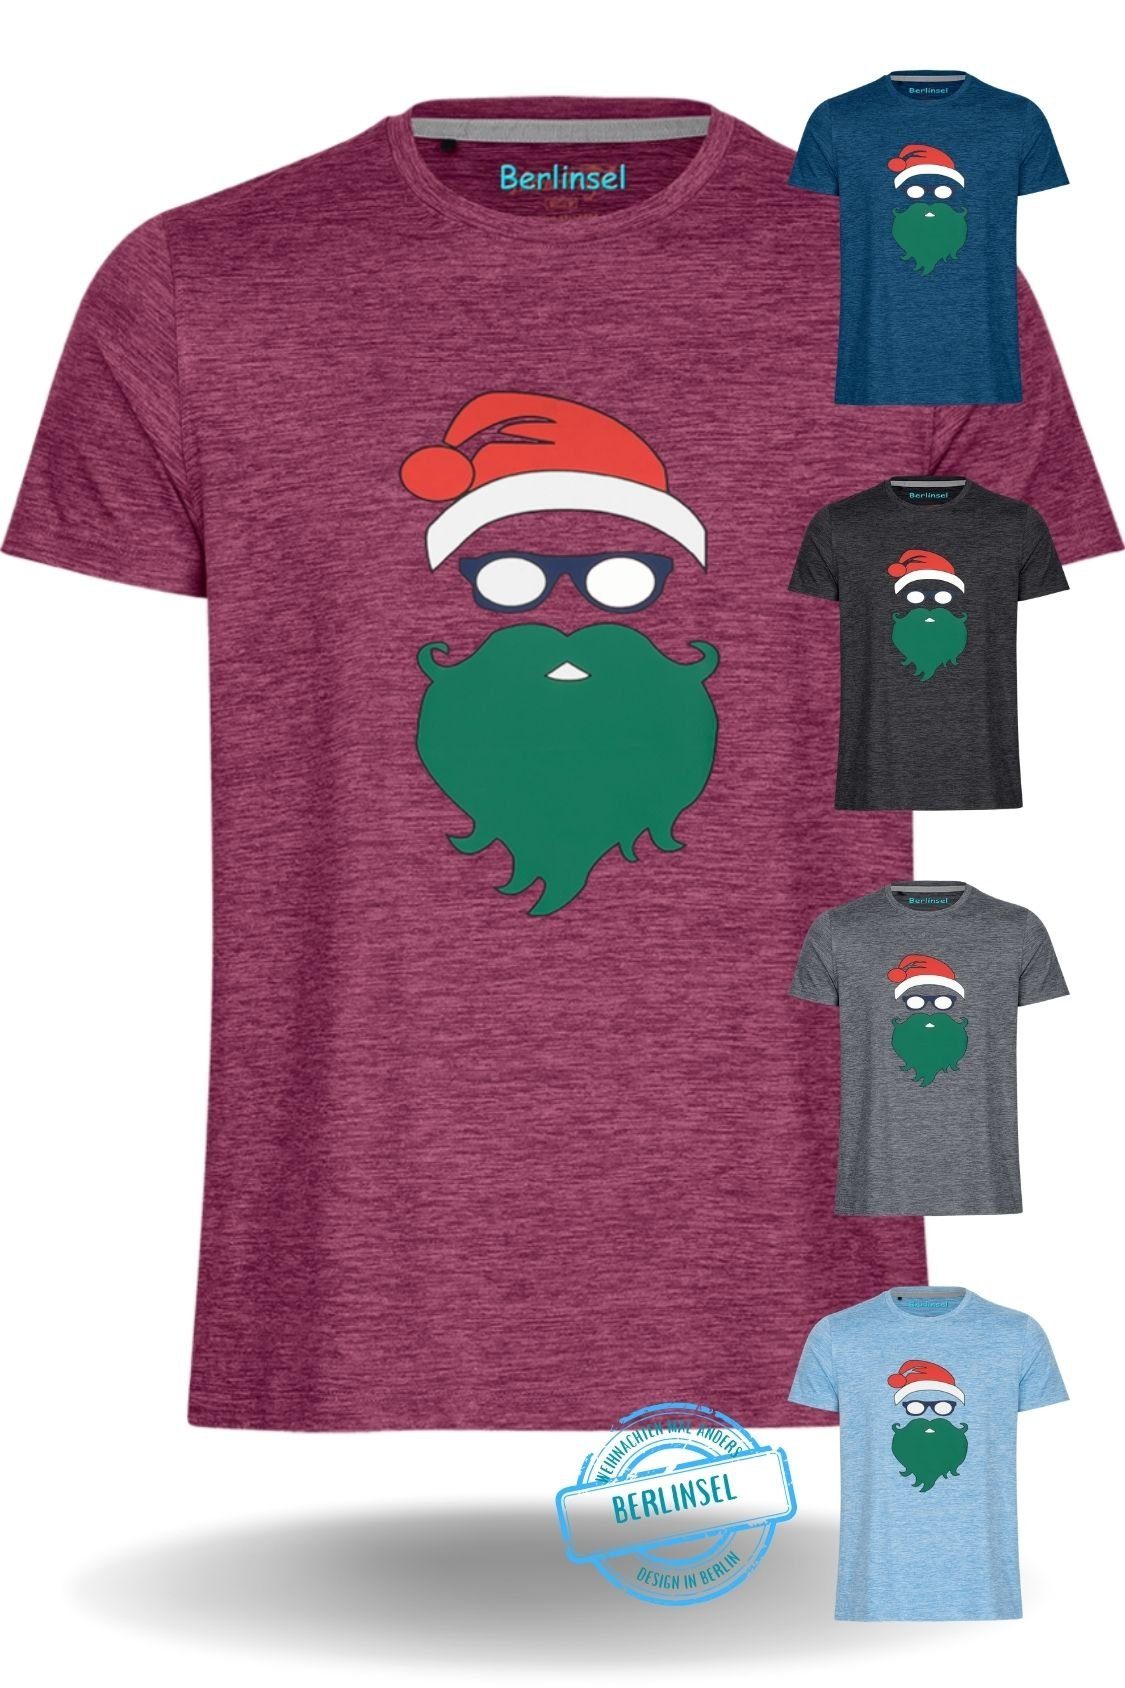 Berlinsel T-Shirt Printshirt Weihnachtsgeschenk, Weihnachtsoutfit Männer Weihnachtsshirt Weihnachtsfeier, Weihnachtsfoto weinrot Herren